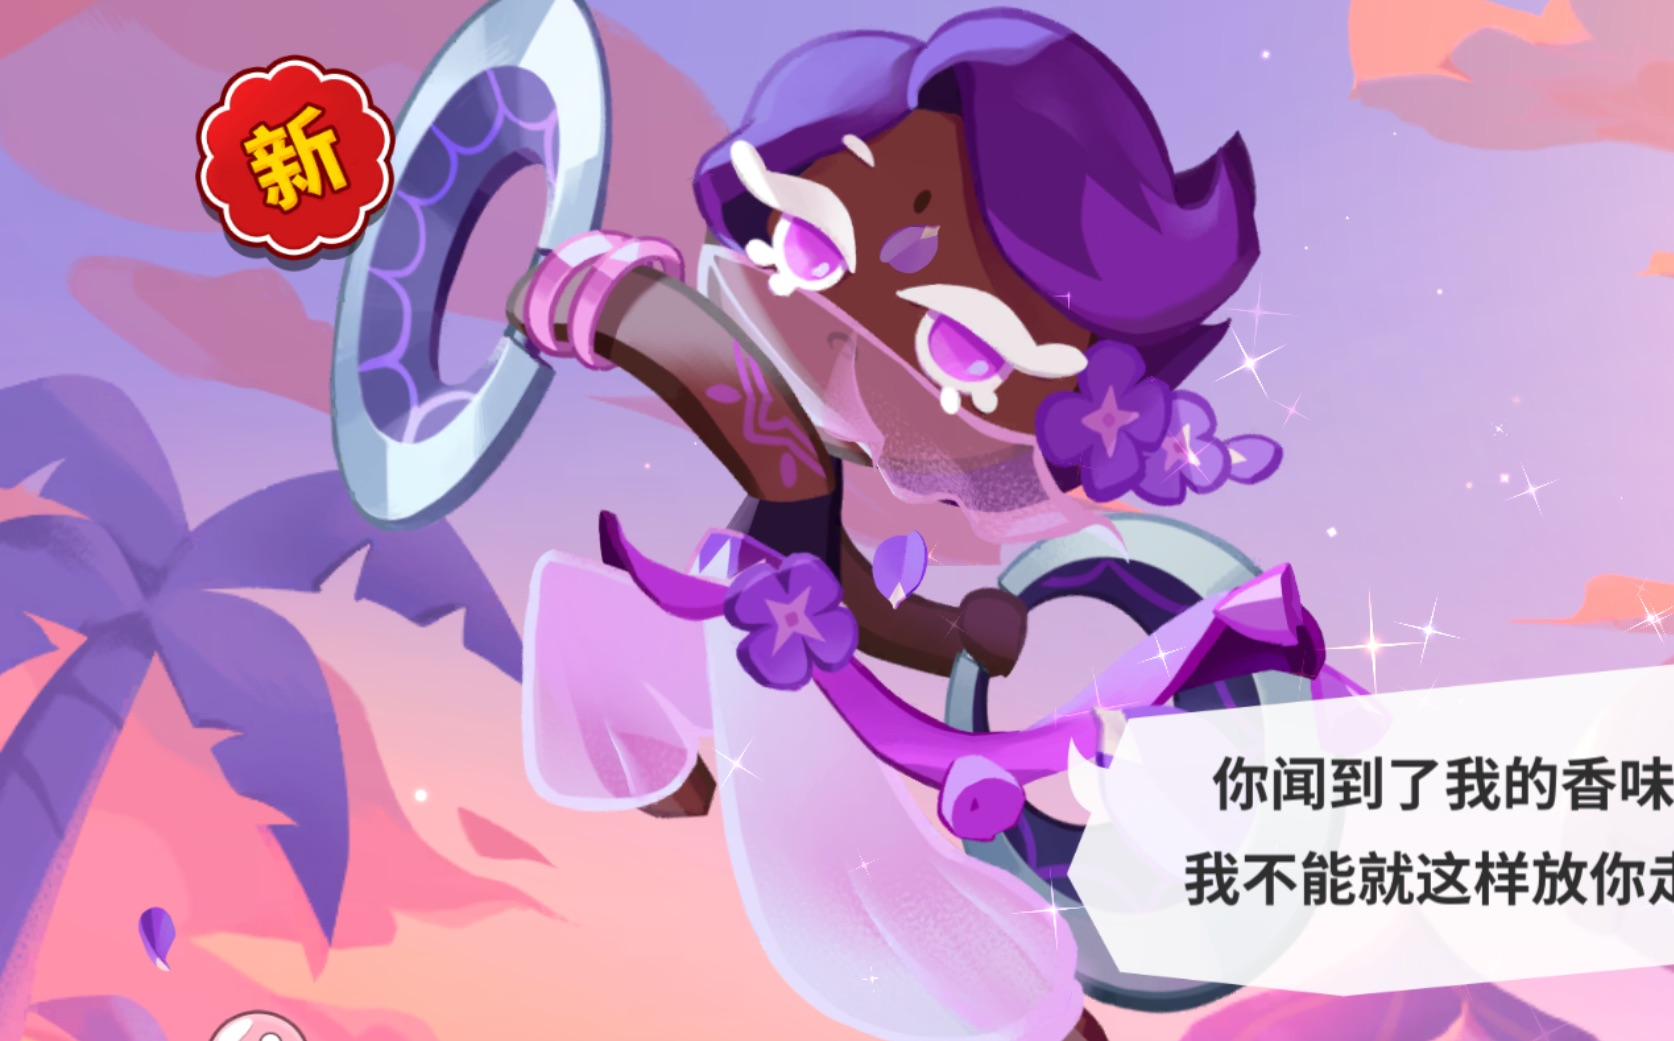 【冲呀!饼干人:王国】紫丁香饼干 (cv: 鹿喑)